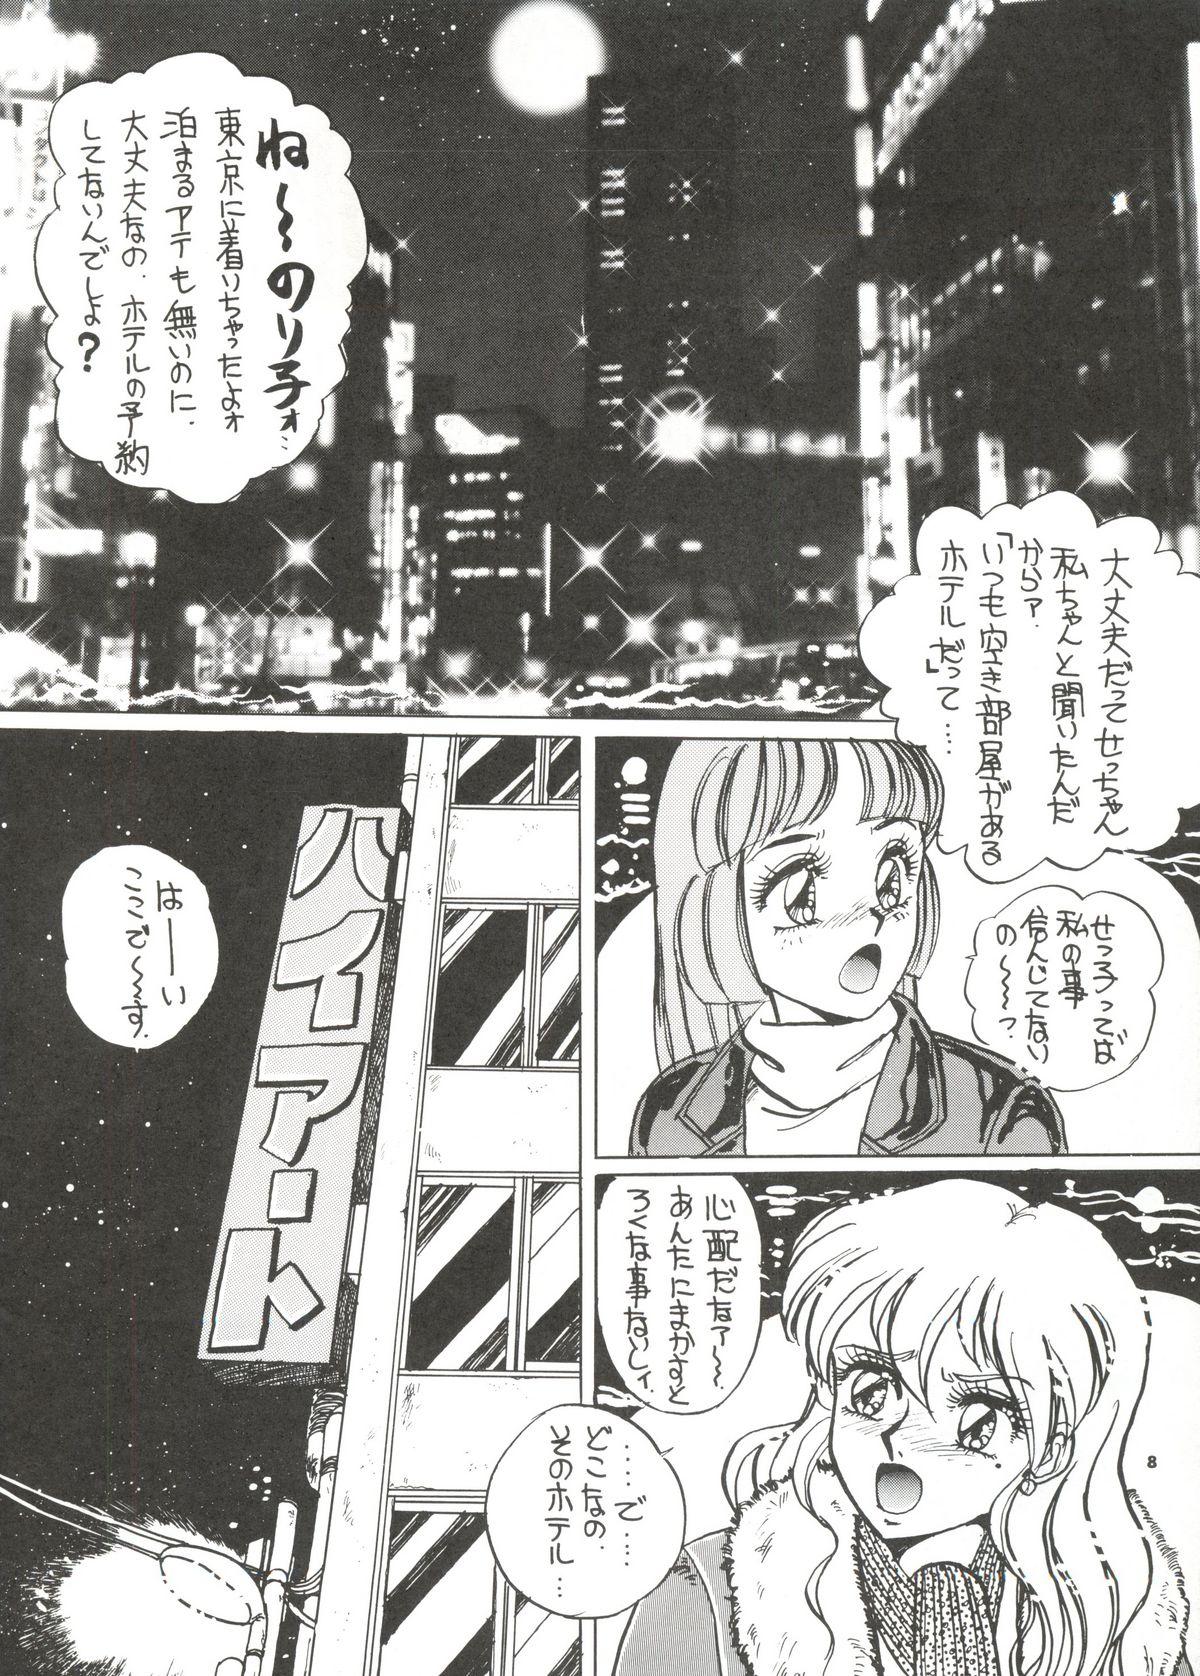 Tinder Tokyo Eki Nojukugumi Cosplay Shoujo Rape Hon - Bakuretsu hunters Stream - Page 7